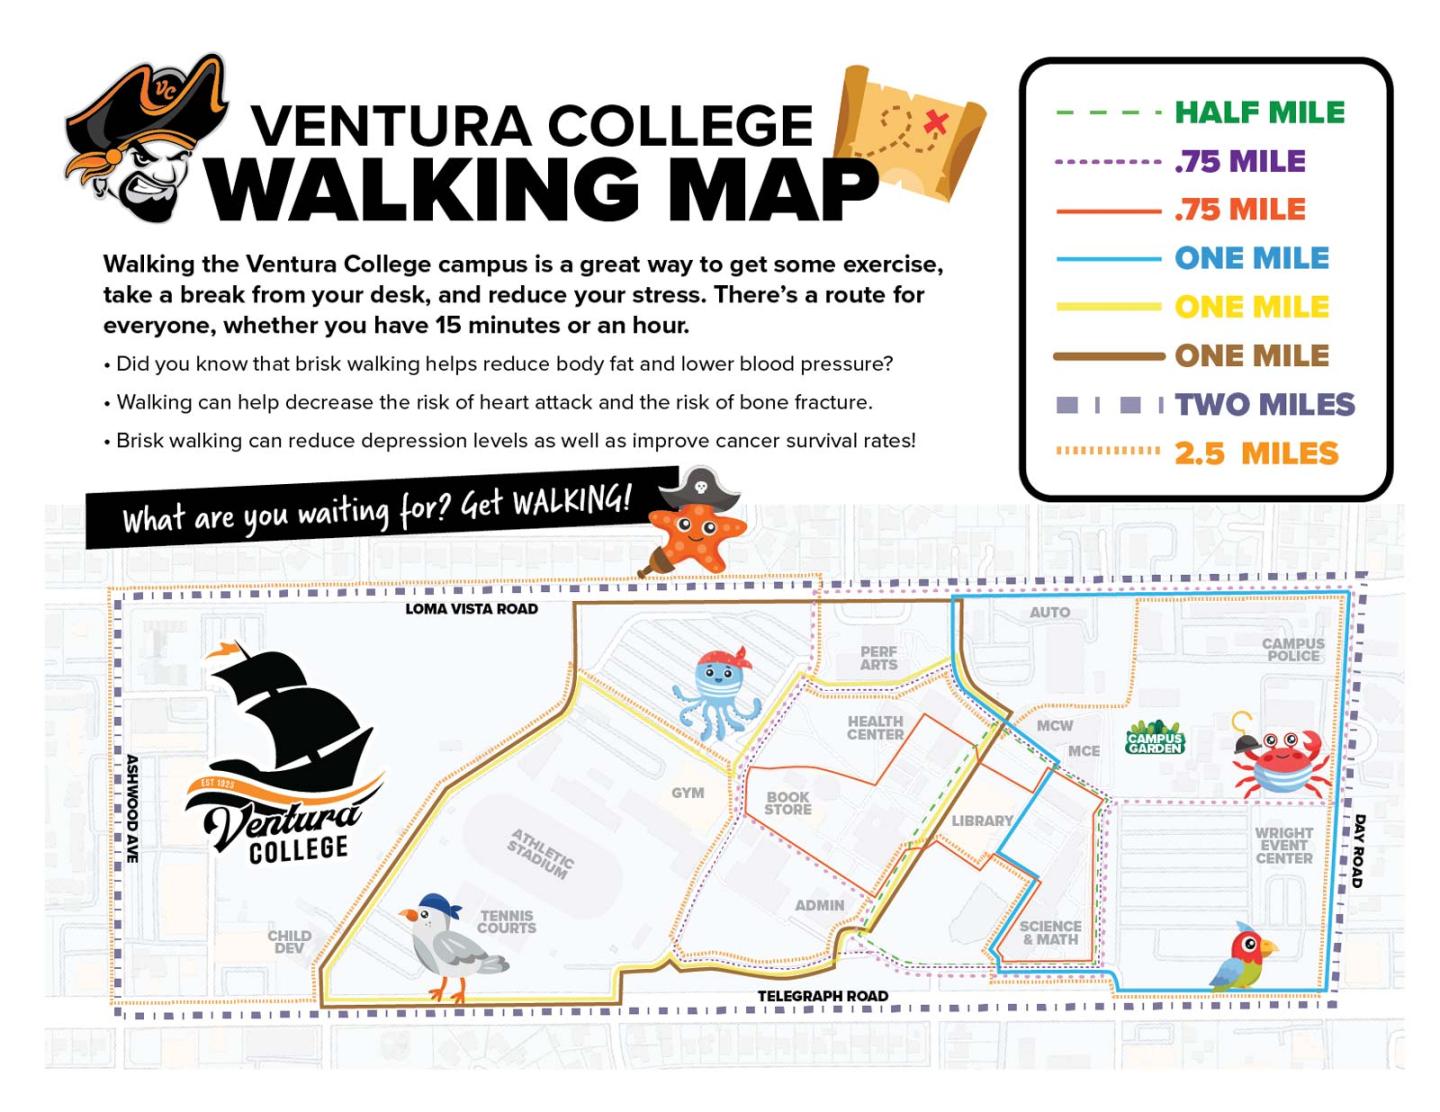 VC Walking Map